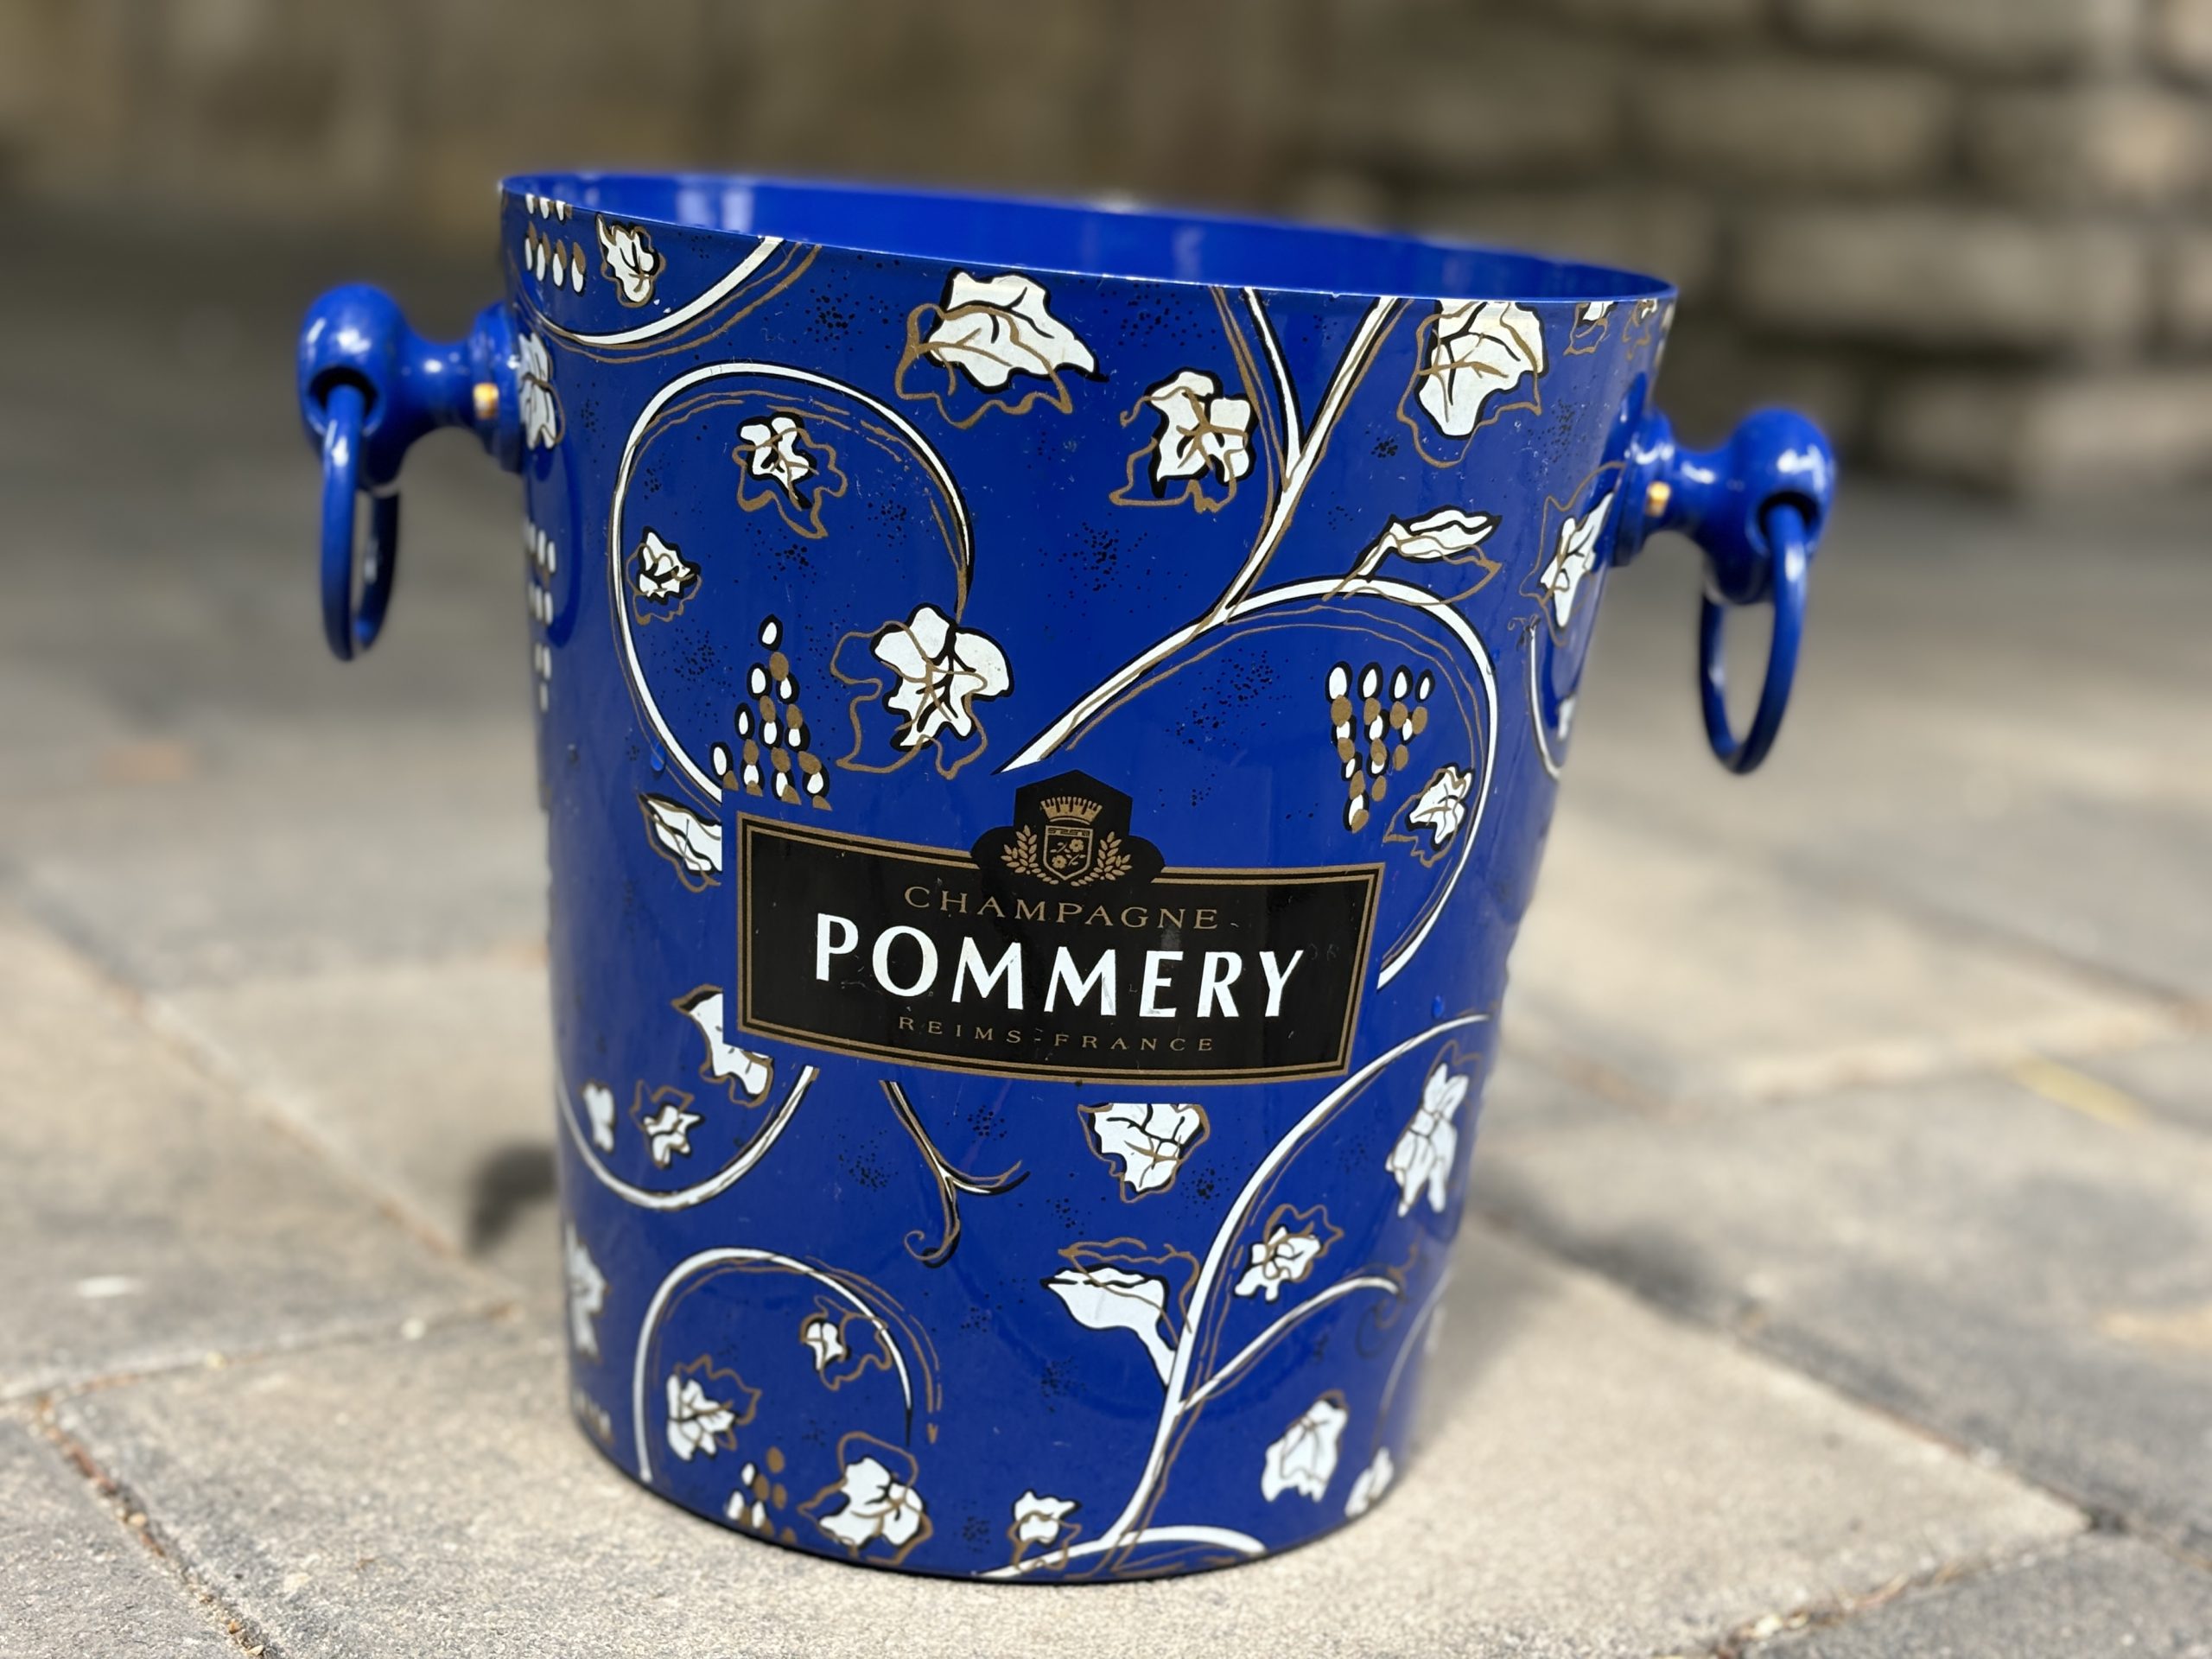 A POMMERY Blue Royal Champagne Cooler látványos ajándék lesz ha vendégségbe megy – 46.800.-Ft